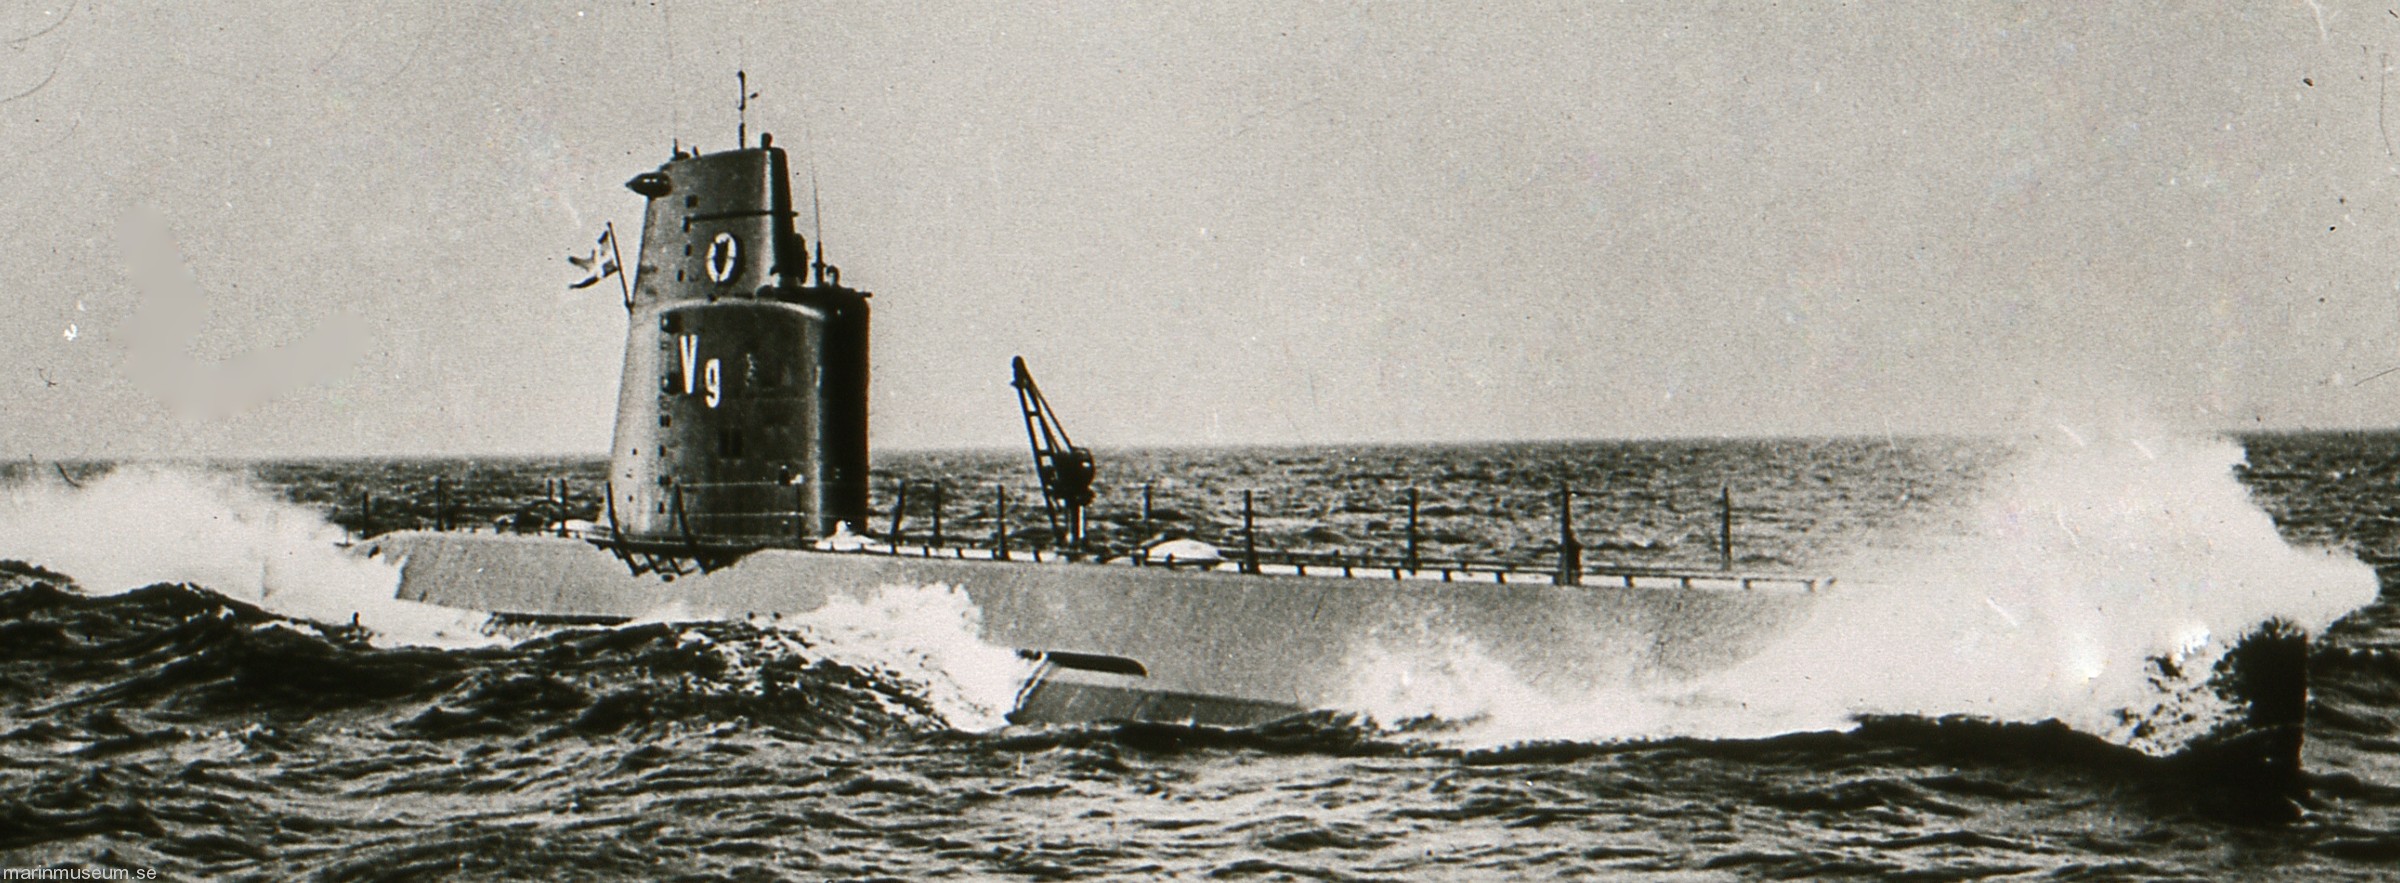 hms hswms vargen draken a12 class attack submarine ubåt swedish navy svenska marinen försvarsmakten 04